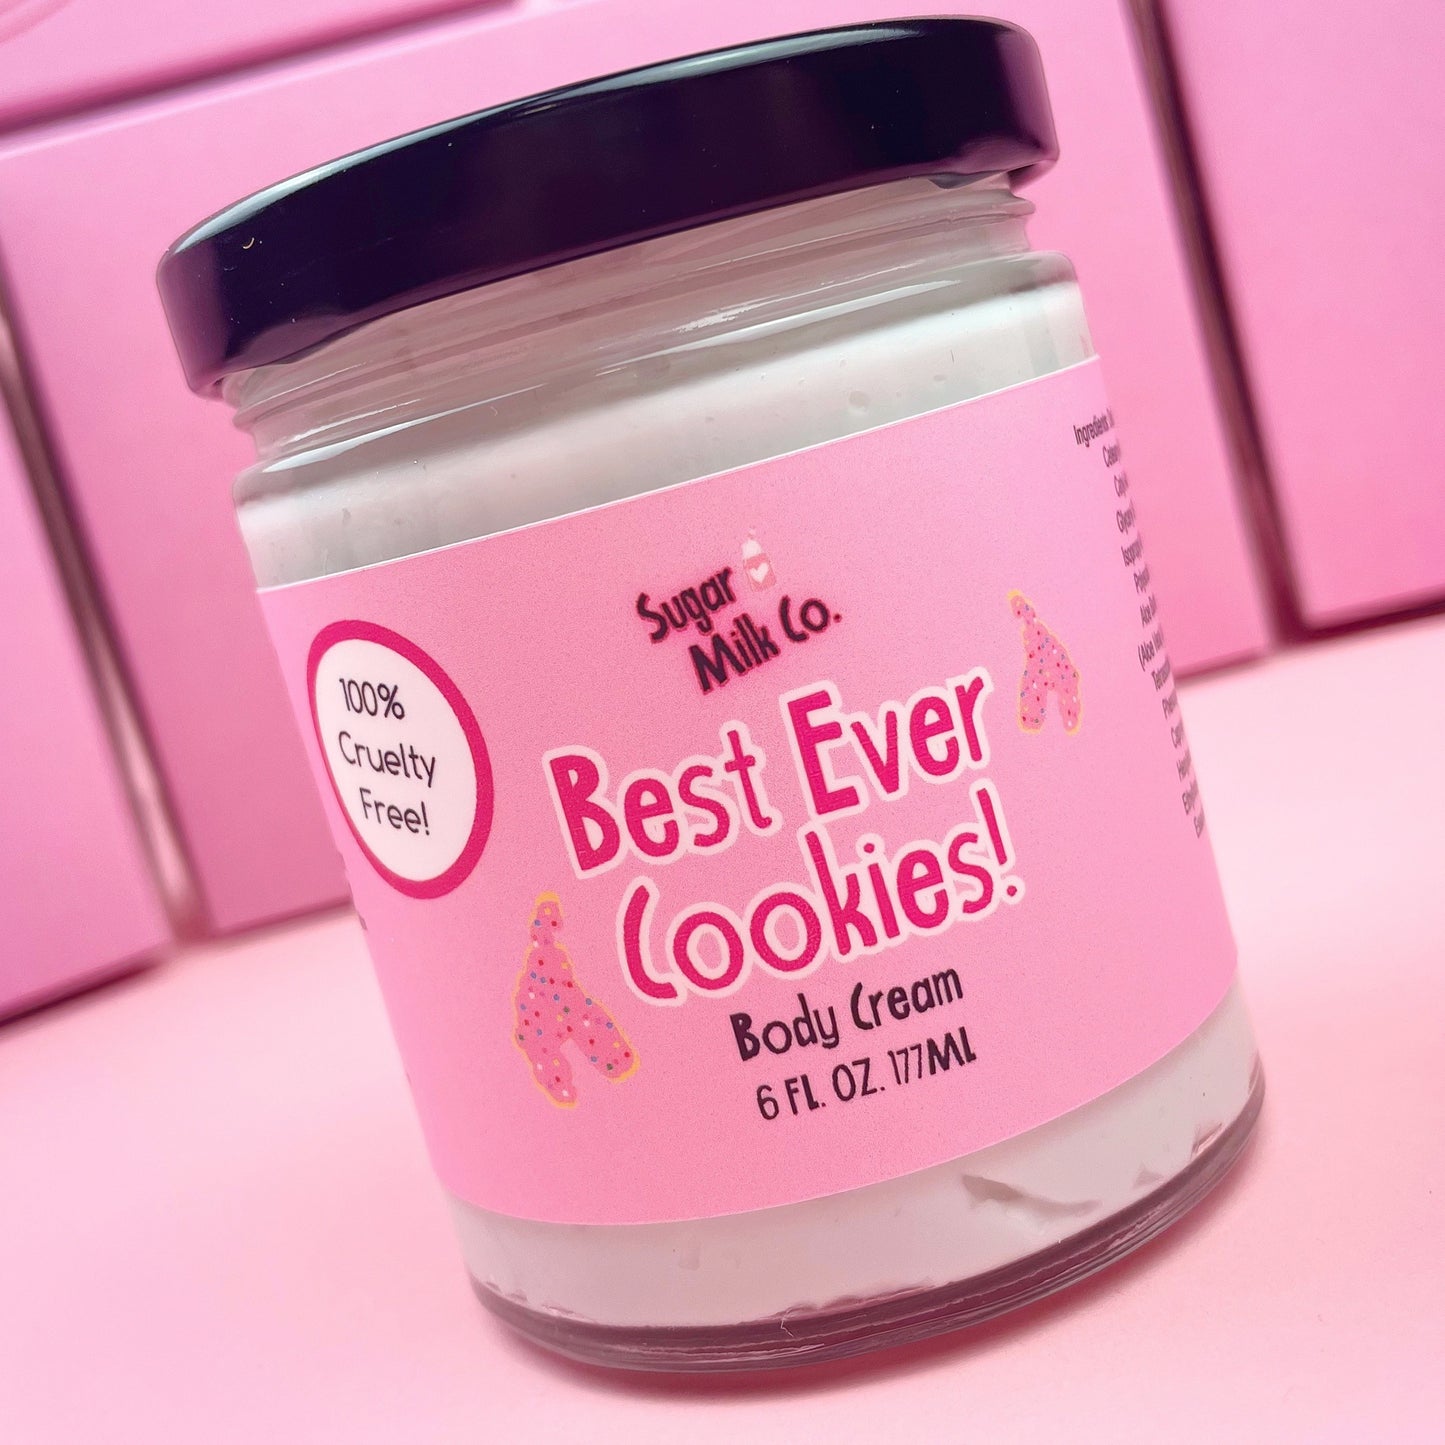 Best Ever Cookies Body Cream